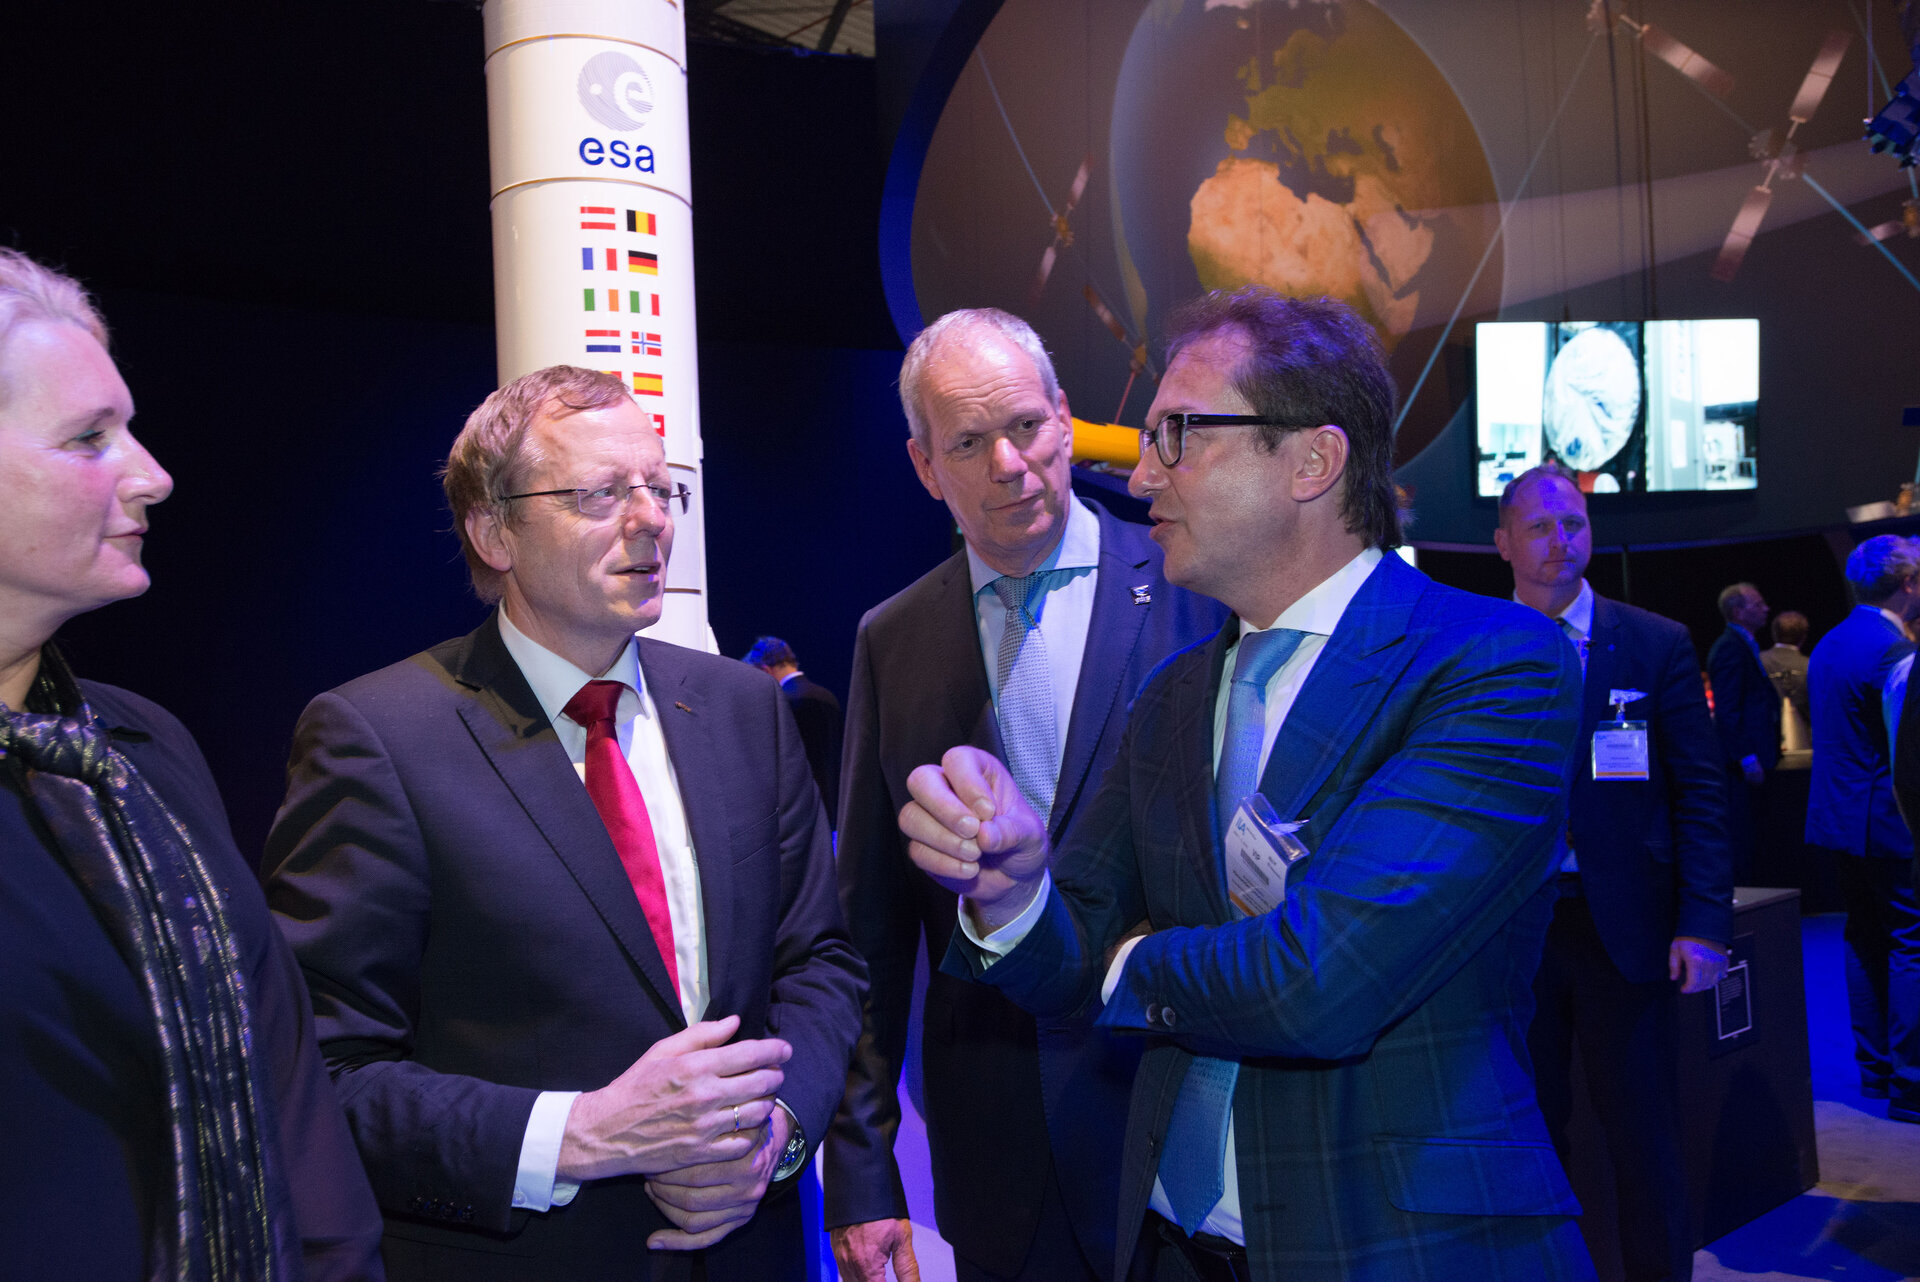 Minister Alexander Dobrindt visits the ‘Space for Earth’ pavilion